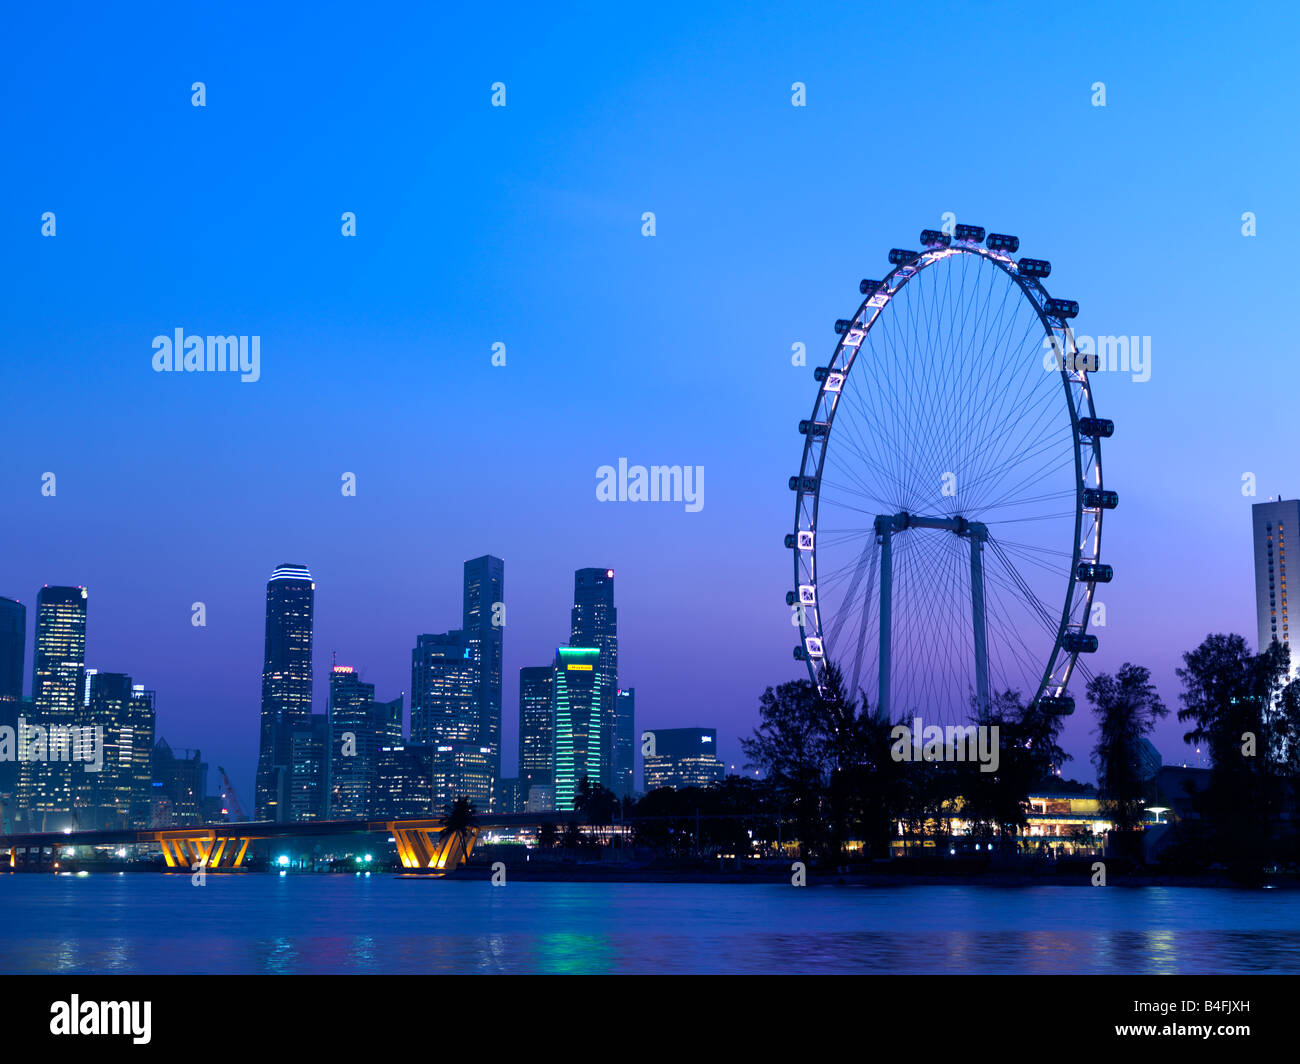 Singapurs Skyline und dem Singapore Flyer von Marina Bay gesehen. Stockfoto